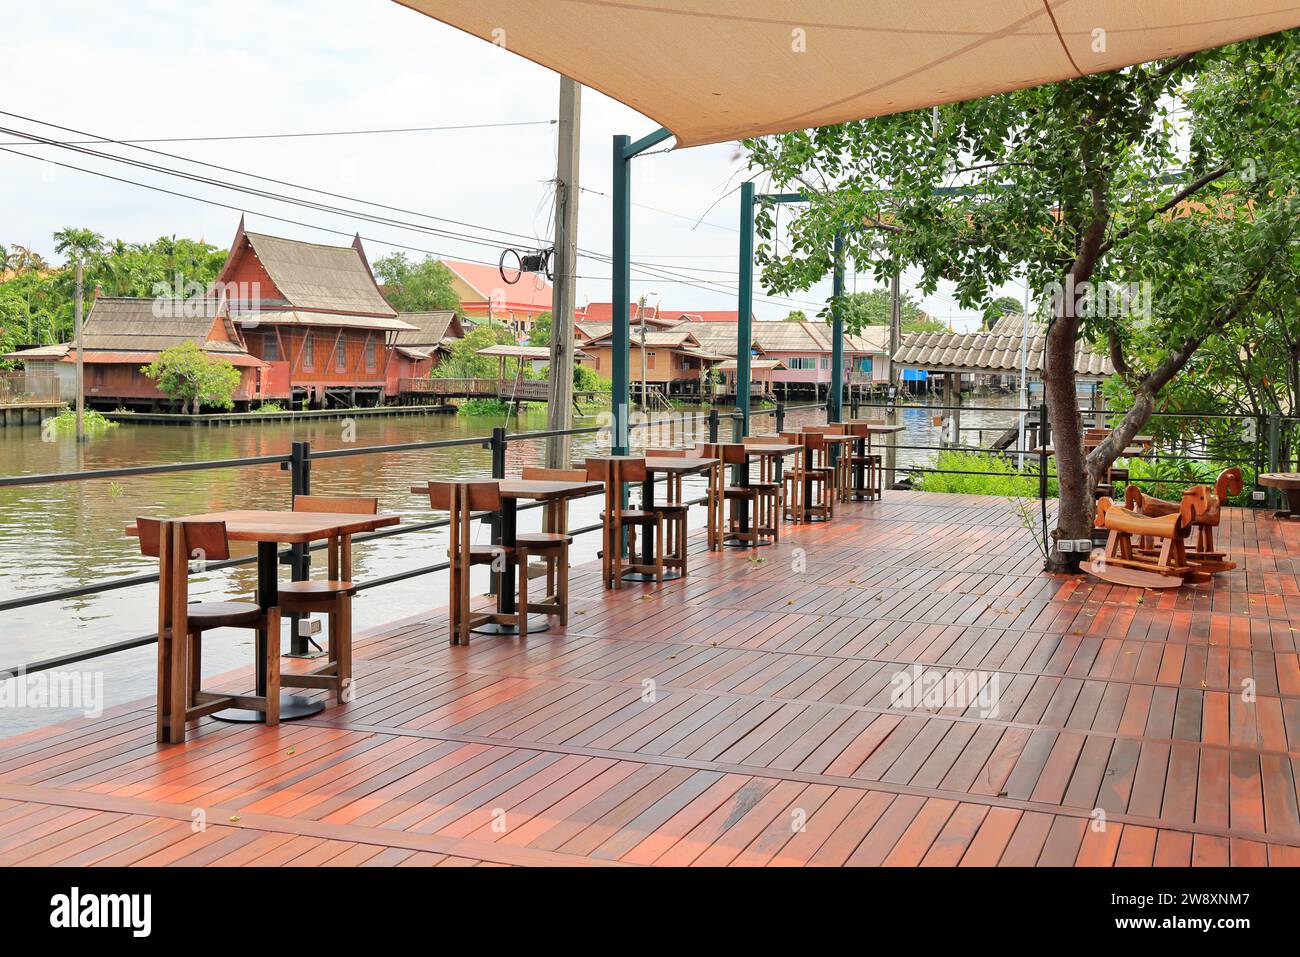 Blick auf das stilvolle hölzerne Café am Wasser im Freien mit Design für zwei Sitzplätze. Holztische und -Stühle sind einfach. Leeres Restaurant Cafe. Stockfoto